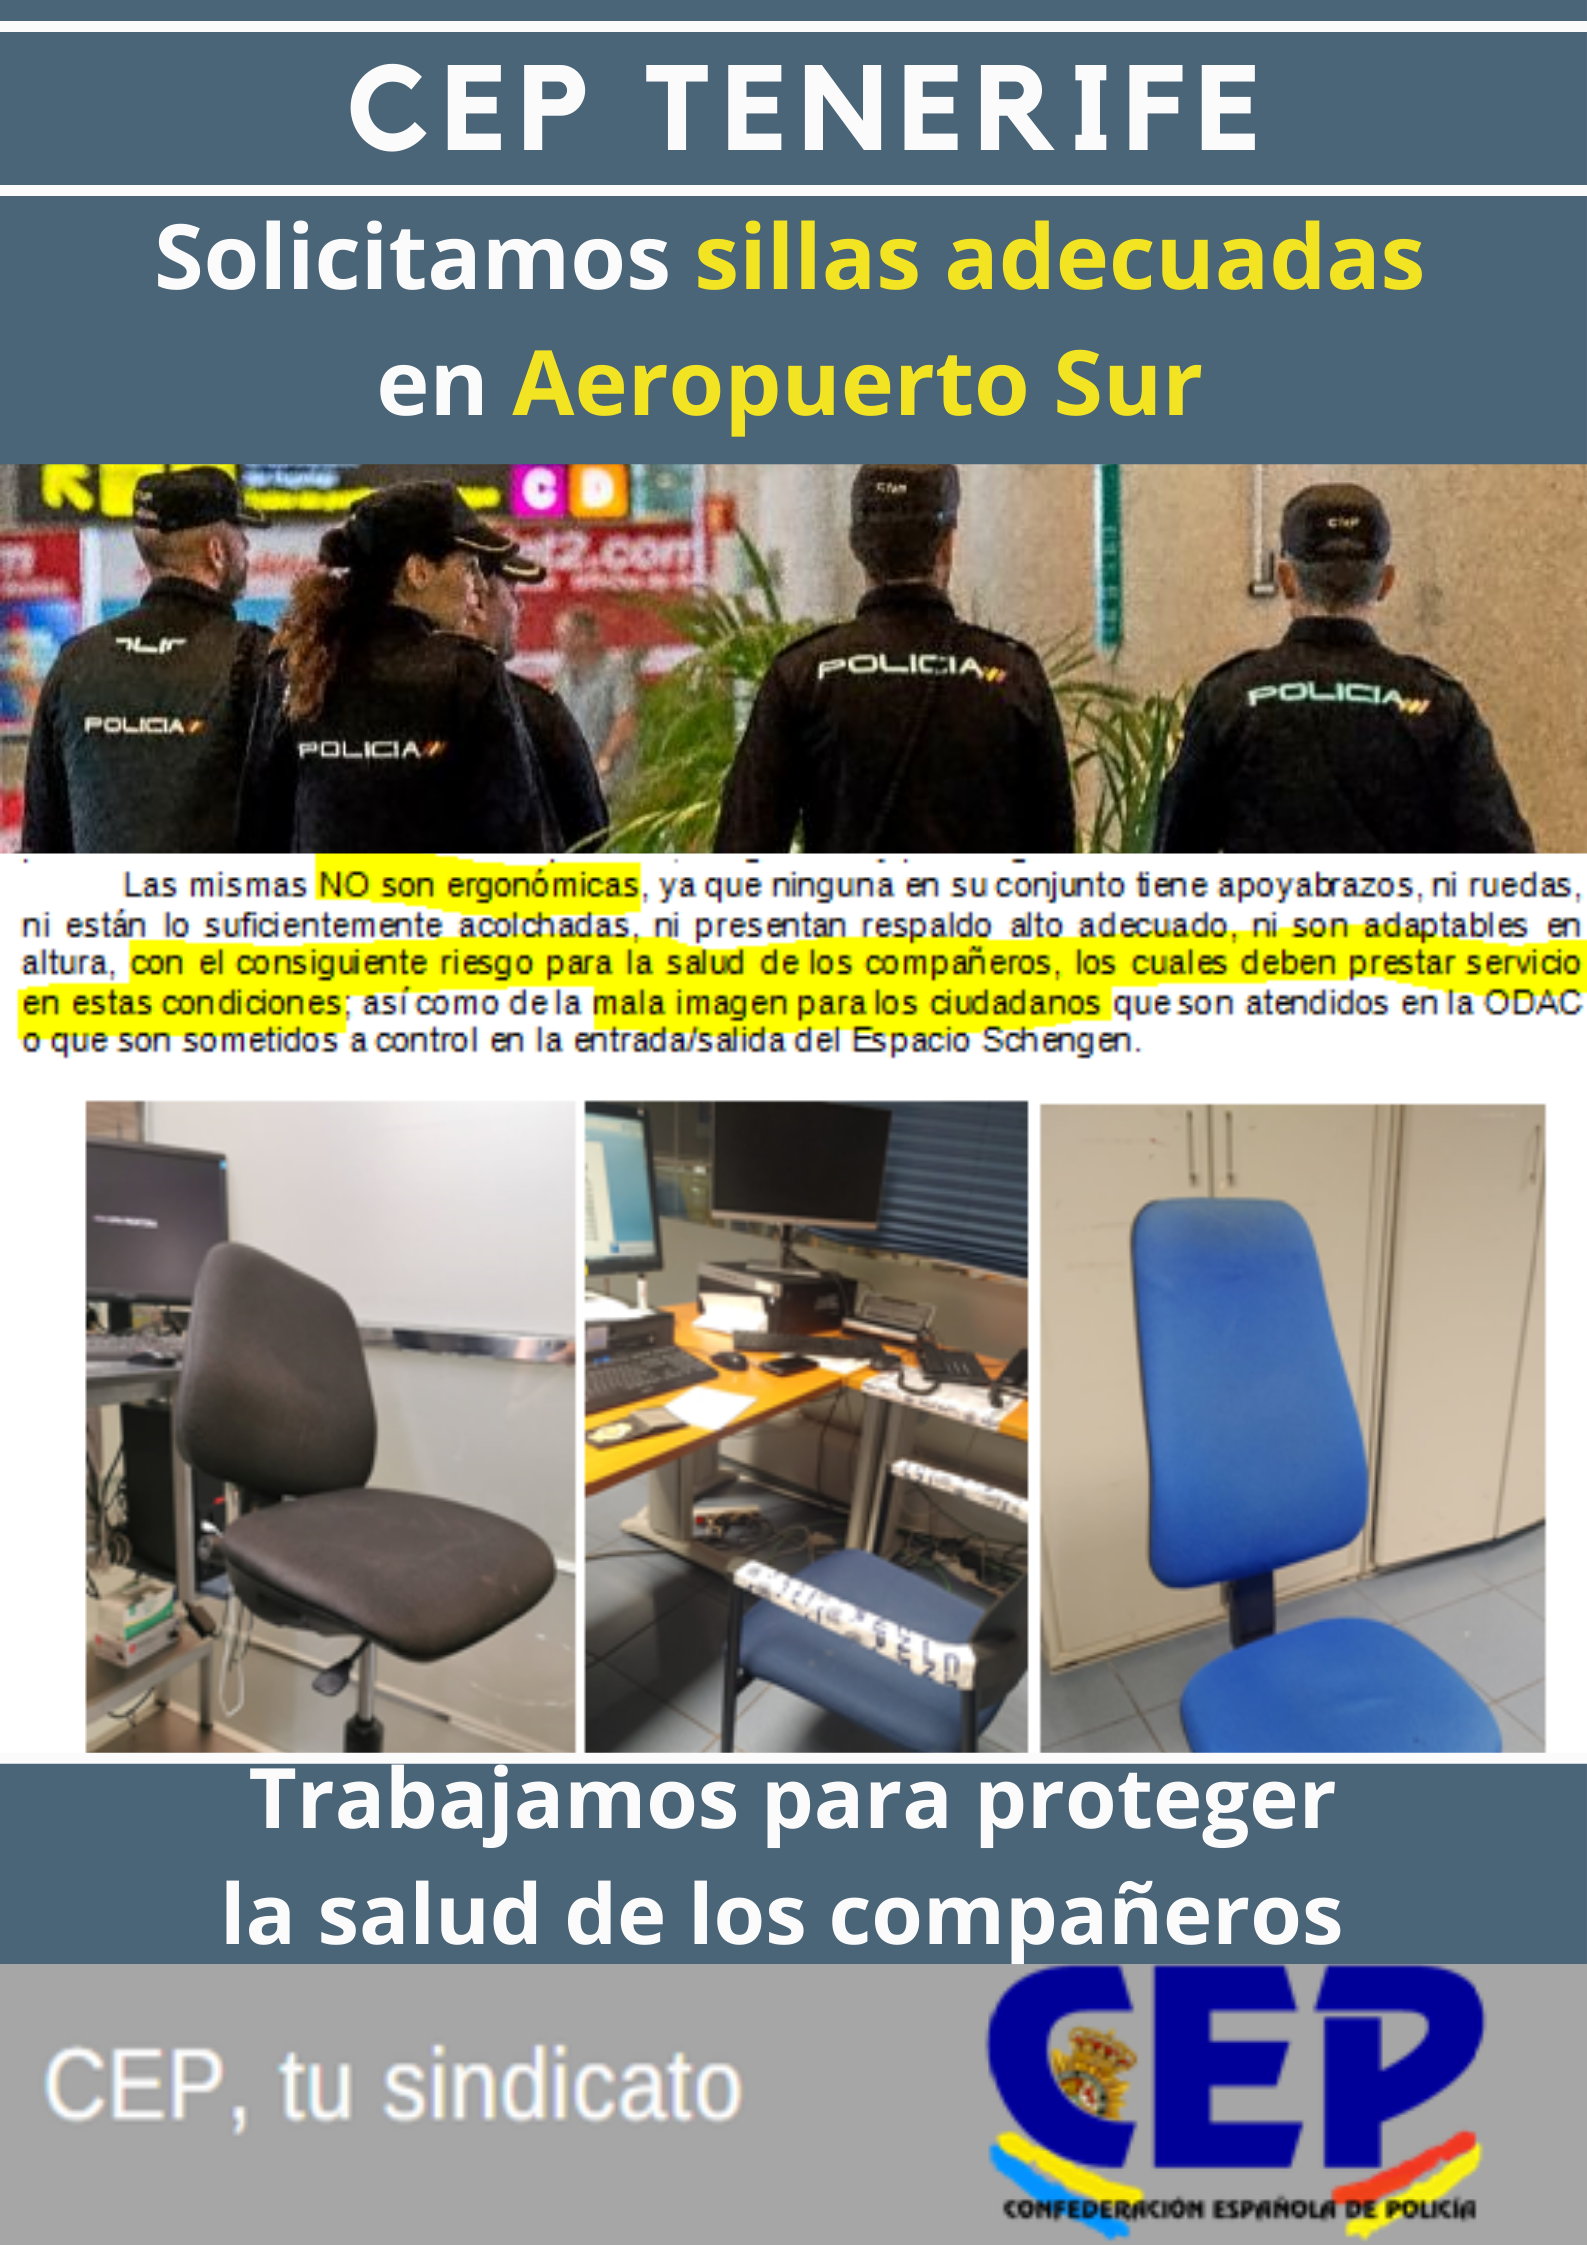 Solicitamos sillas adecuadas compañeros aeropuerto sur en puestos trabajo ODAC y filtros